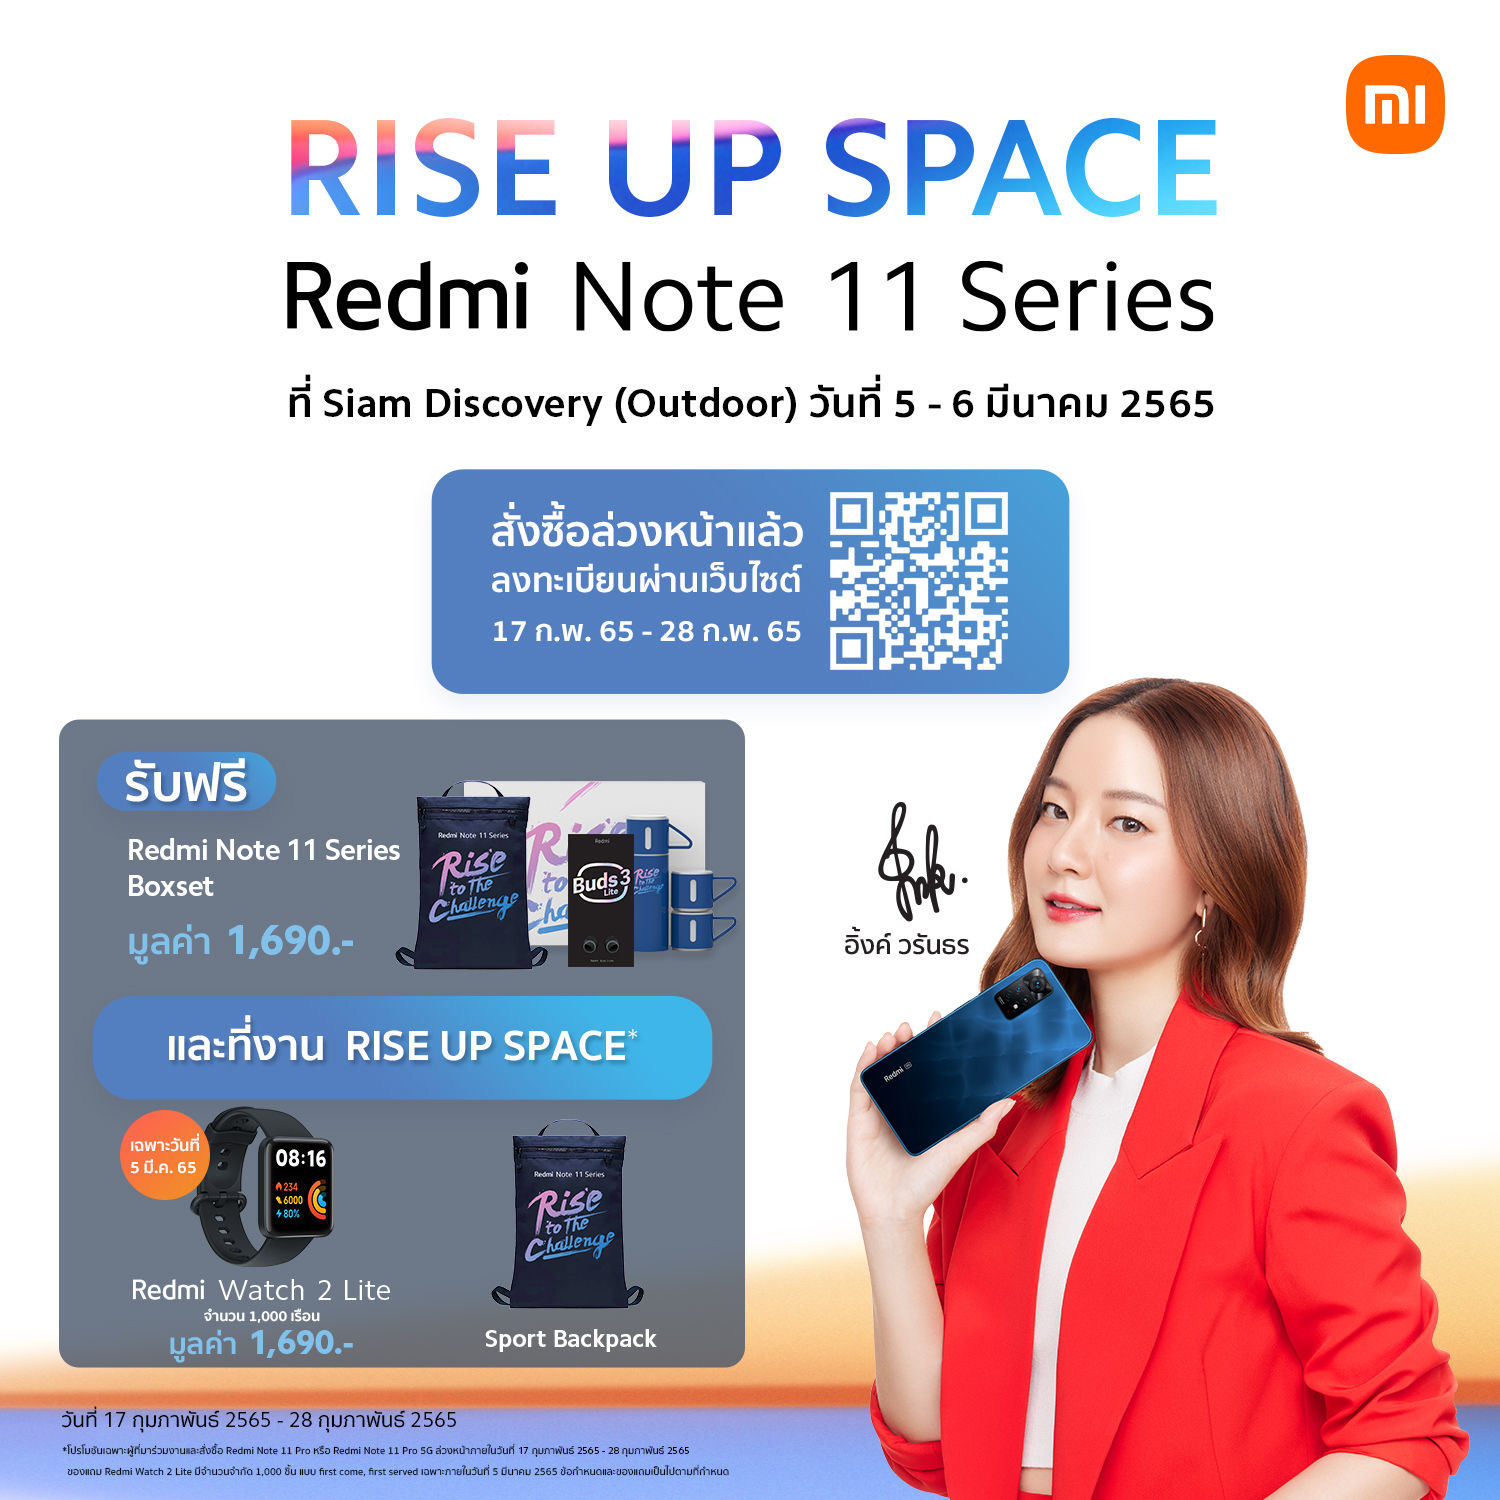 เสียวหมี่เตรียมของขวัญพิเศษให้ลูกค้า Redmi Note 11 Pro 5G และ Redmi Note 11 Pro จำนวน 1,000 คนแรก ในวันที่ 5 มี.ค นี้เท่านั้น!